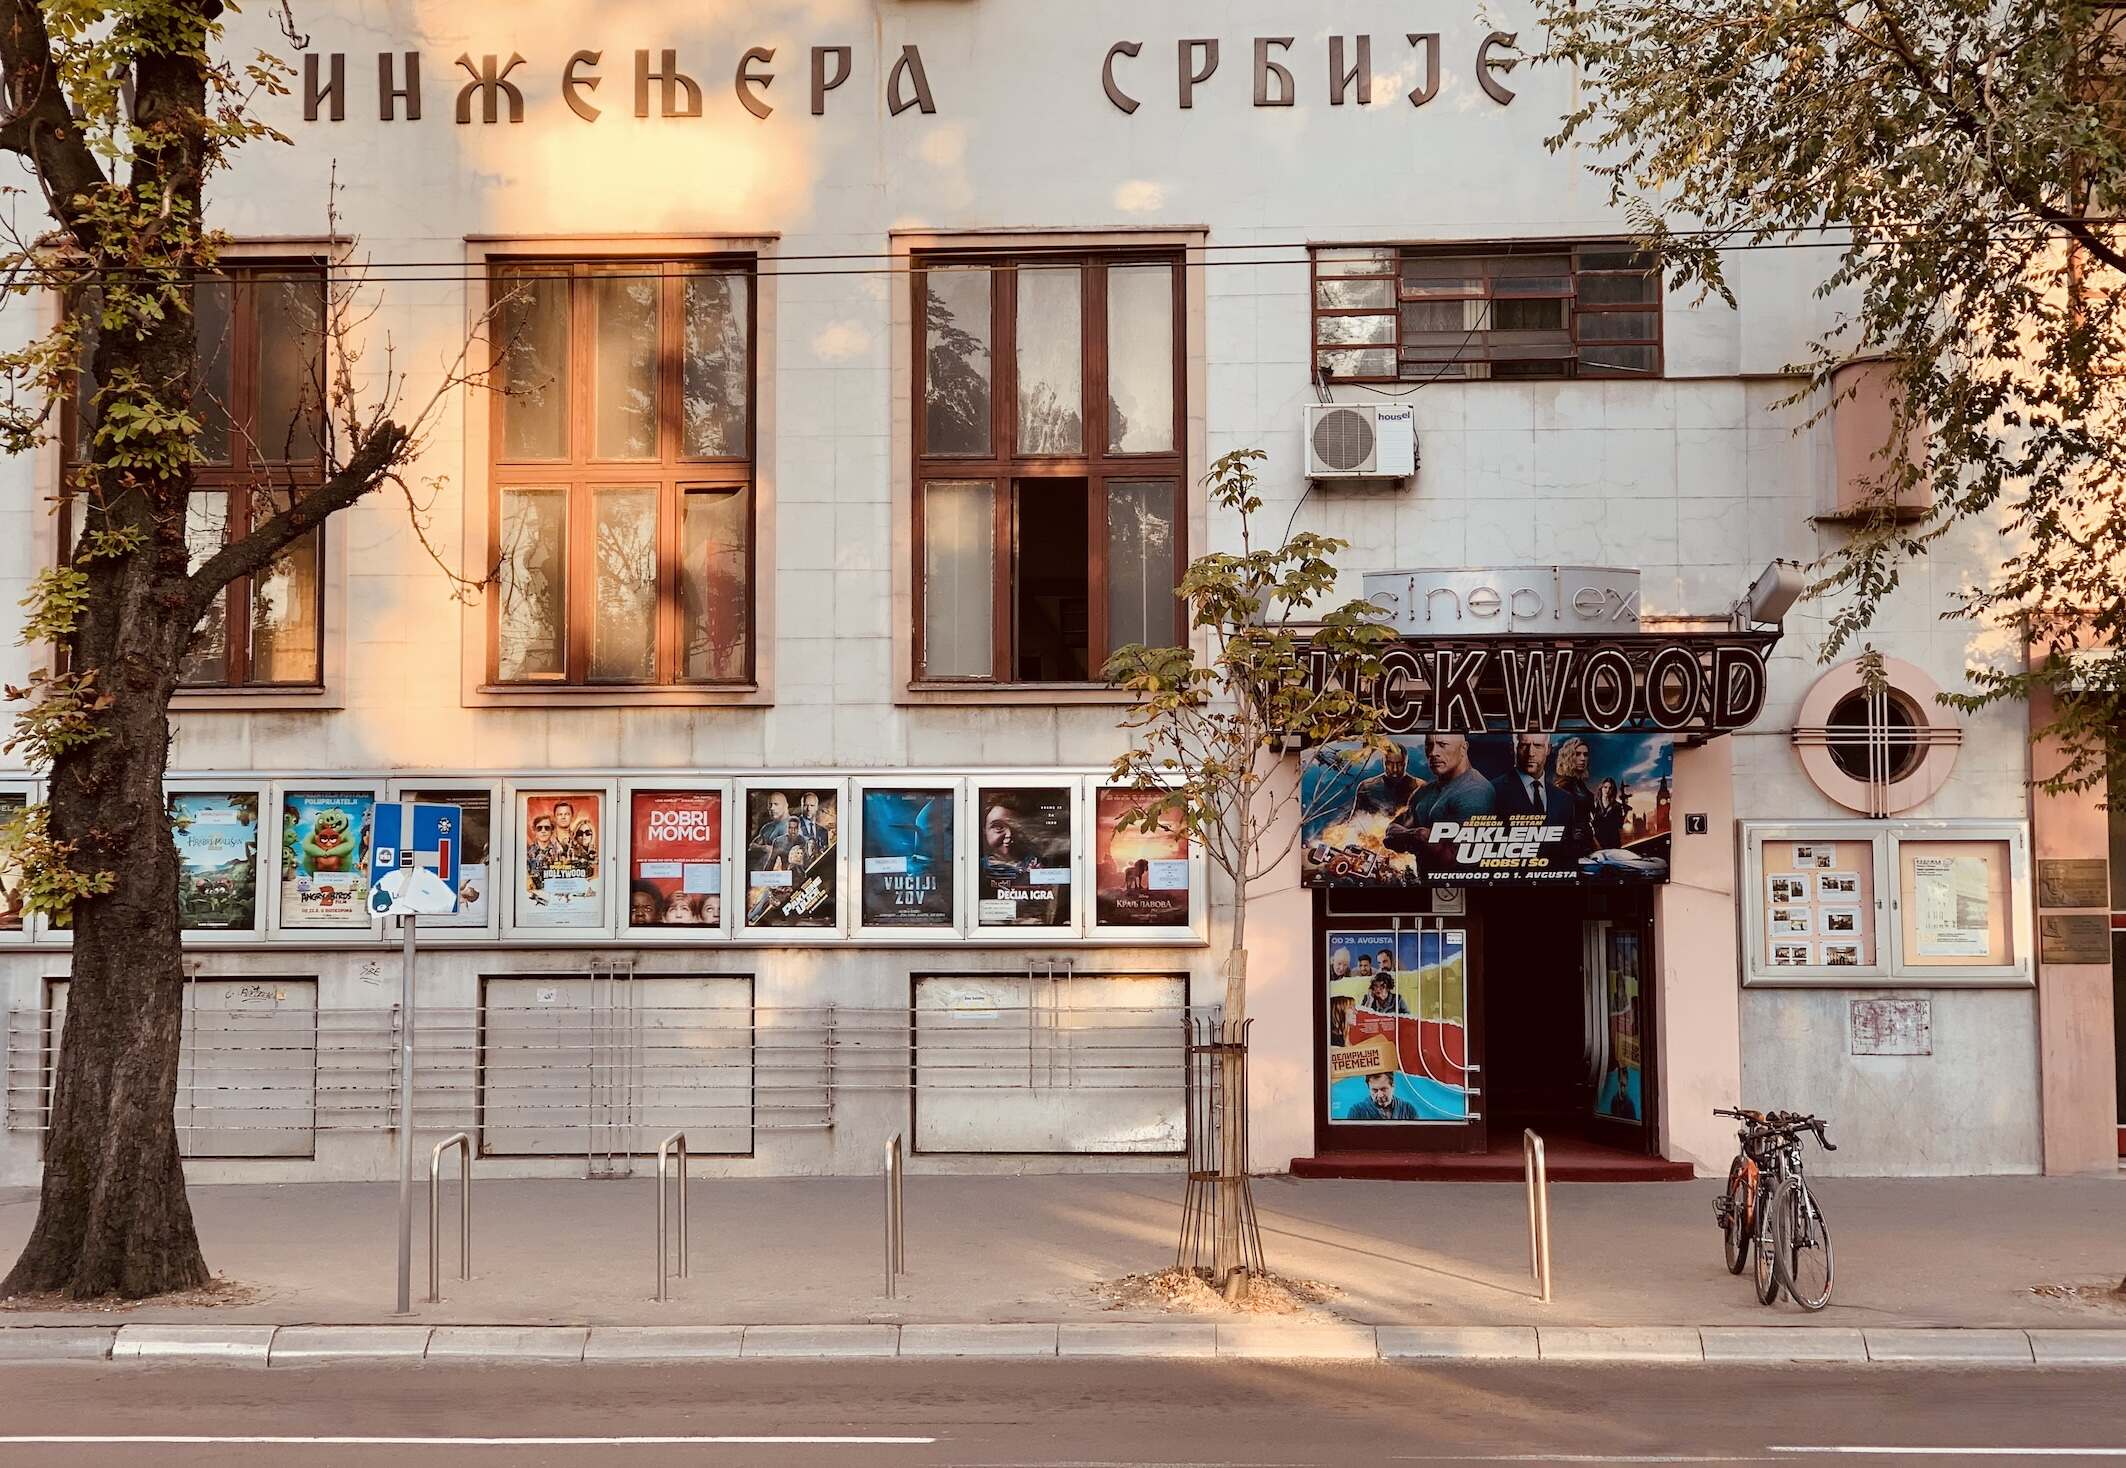 Tuckwood Cinema Cool Spots Around Belgrade